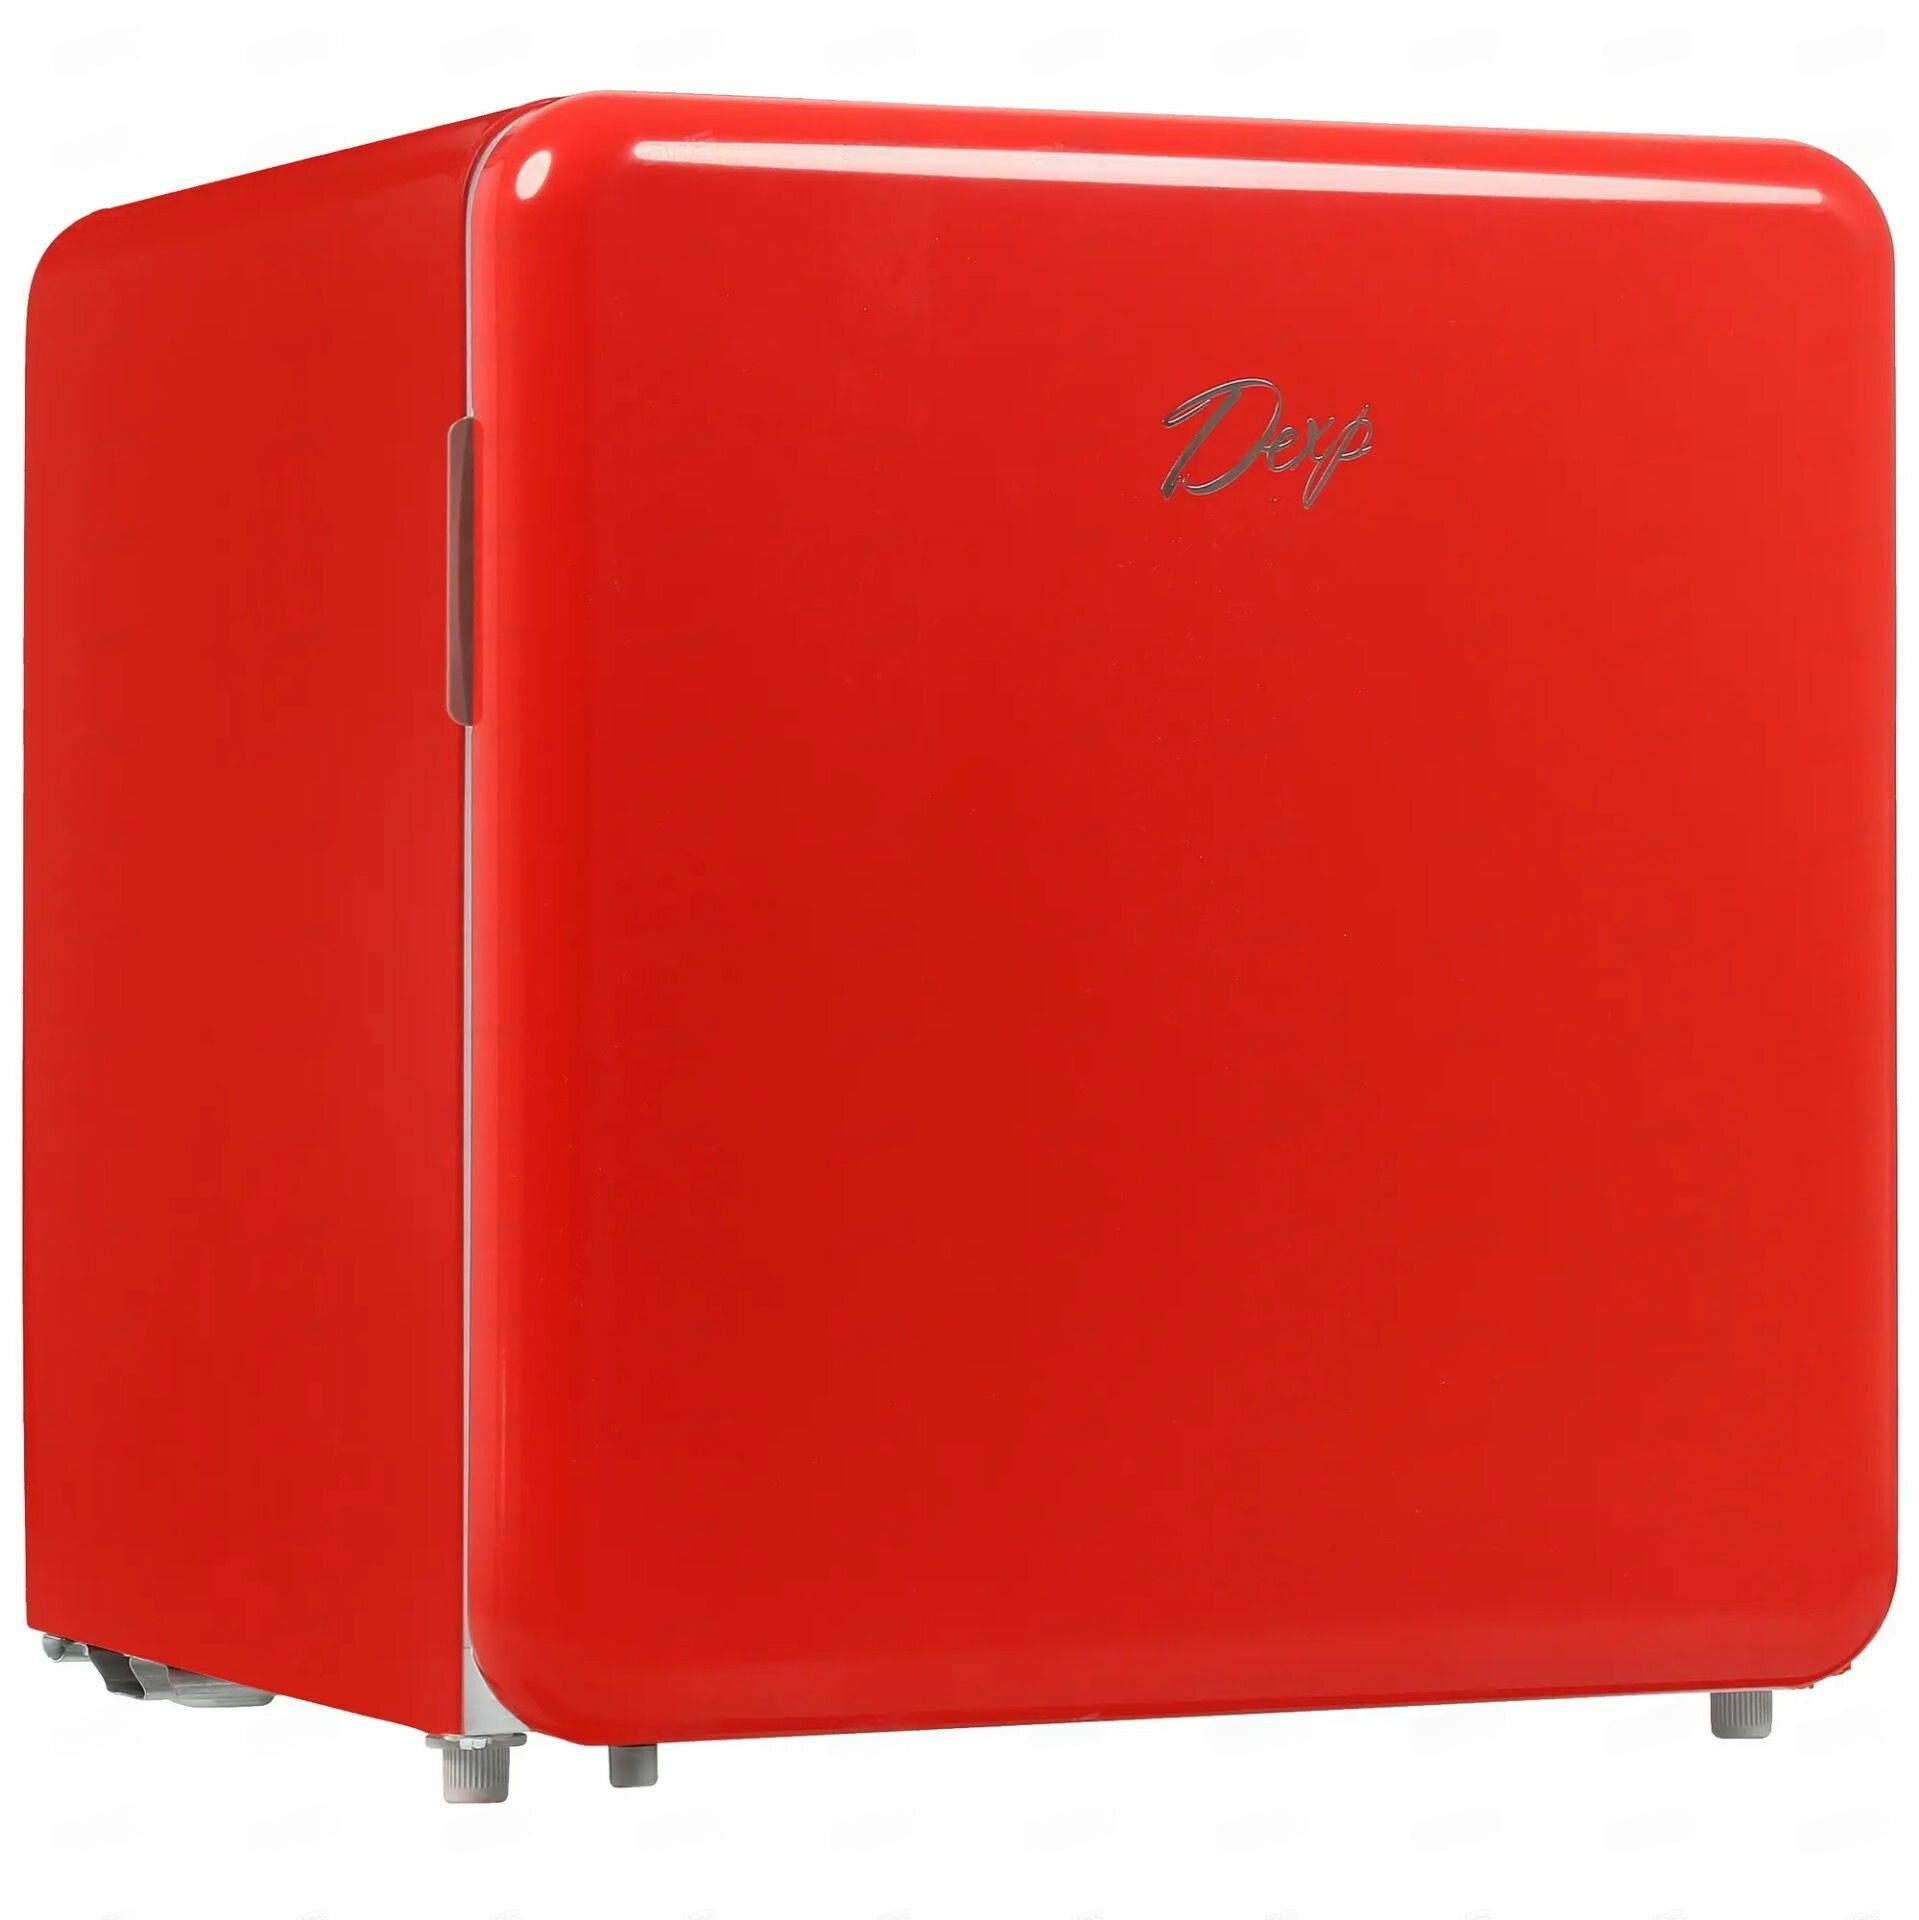 Однодверный мини холодильник компактный (гарантия целости!), красный, GoodsMart, 1 шт. - фотография № 1